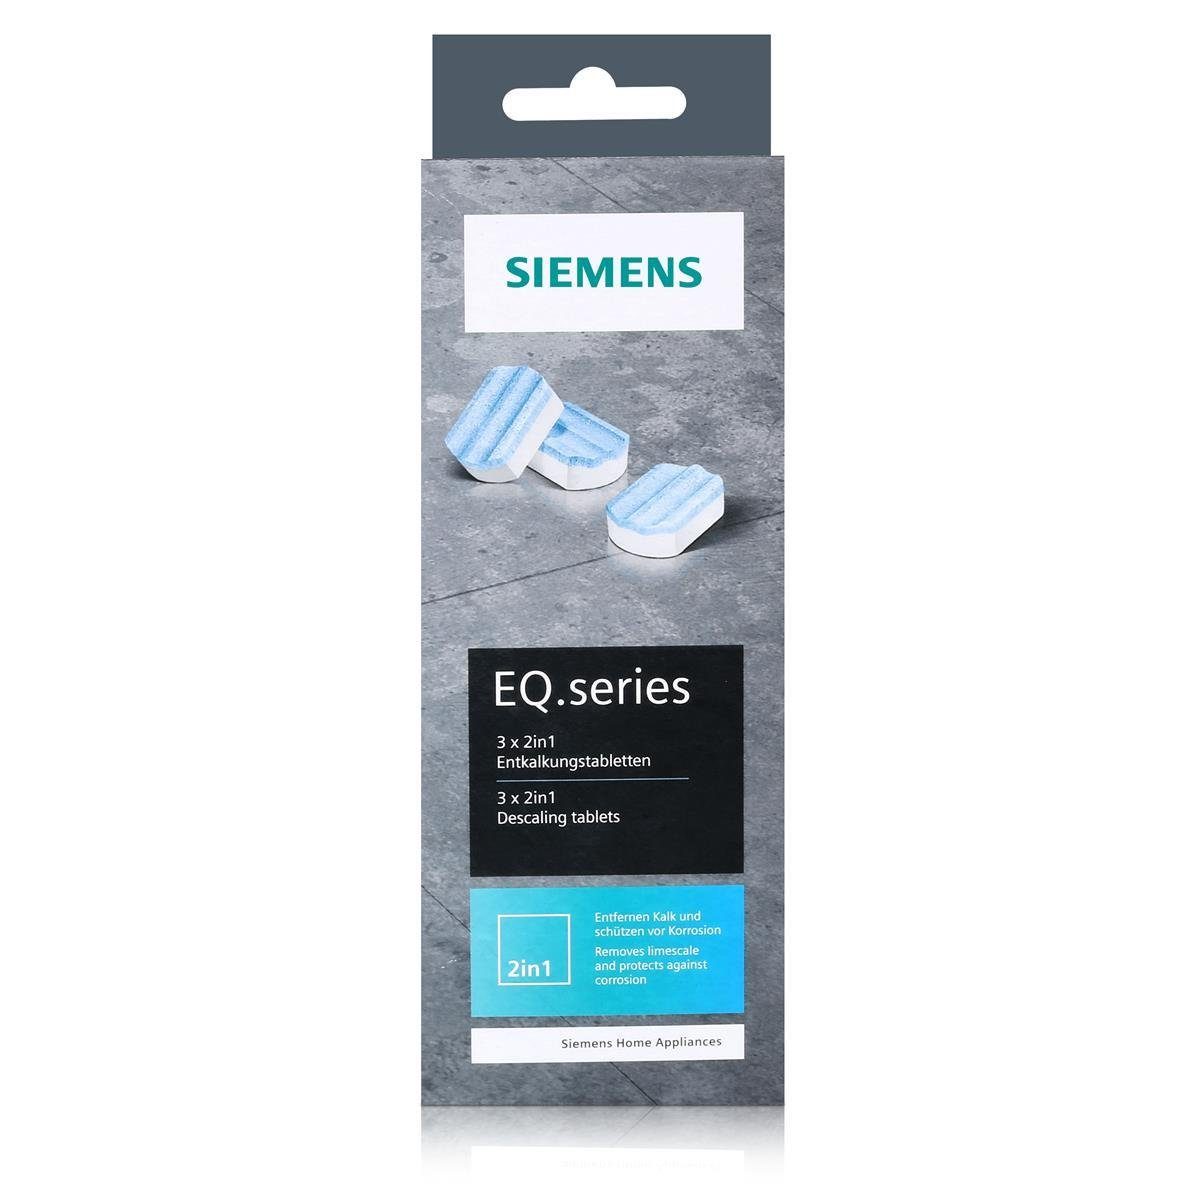 SIEMENS 5x Siemens EQ.series TZ80002A Entkalker Kaffeevoll Entkalkungstabletten für 2in1